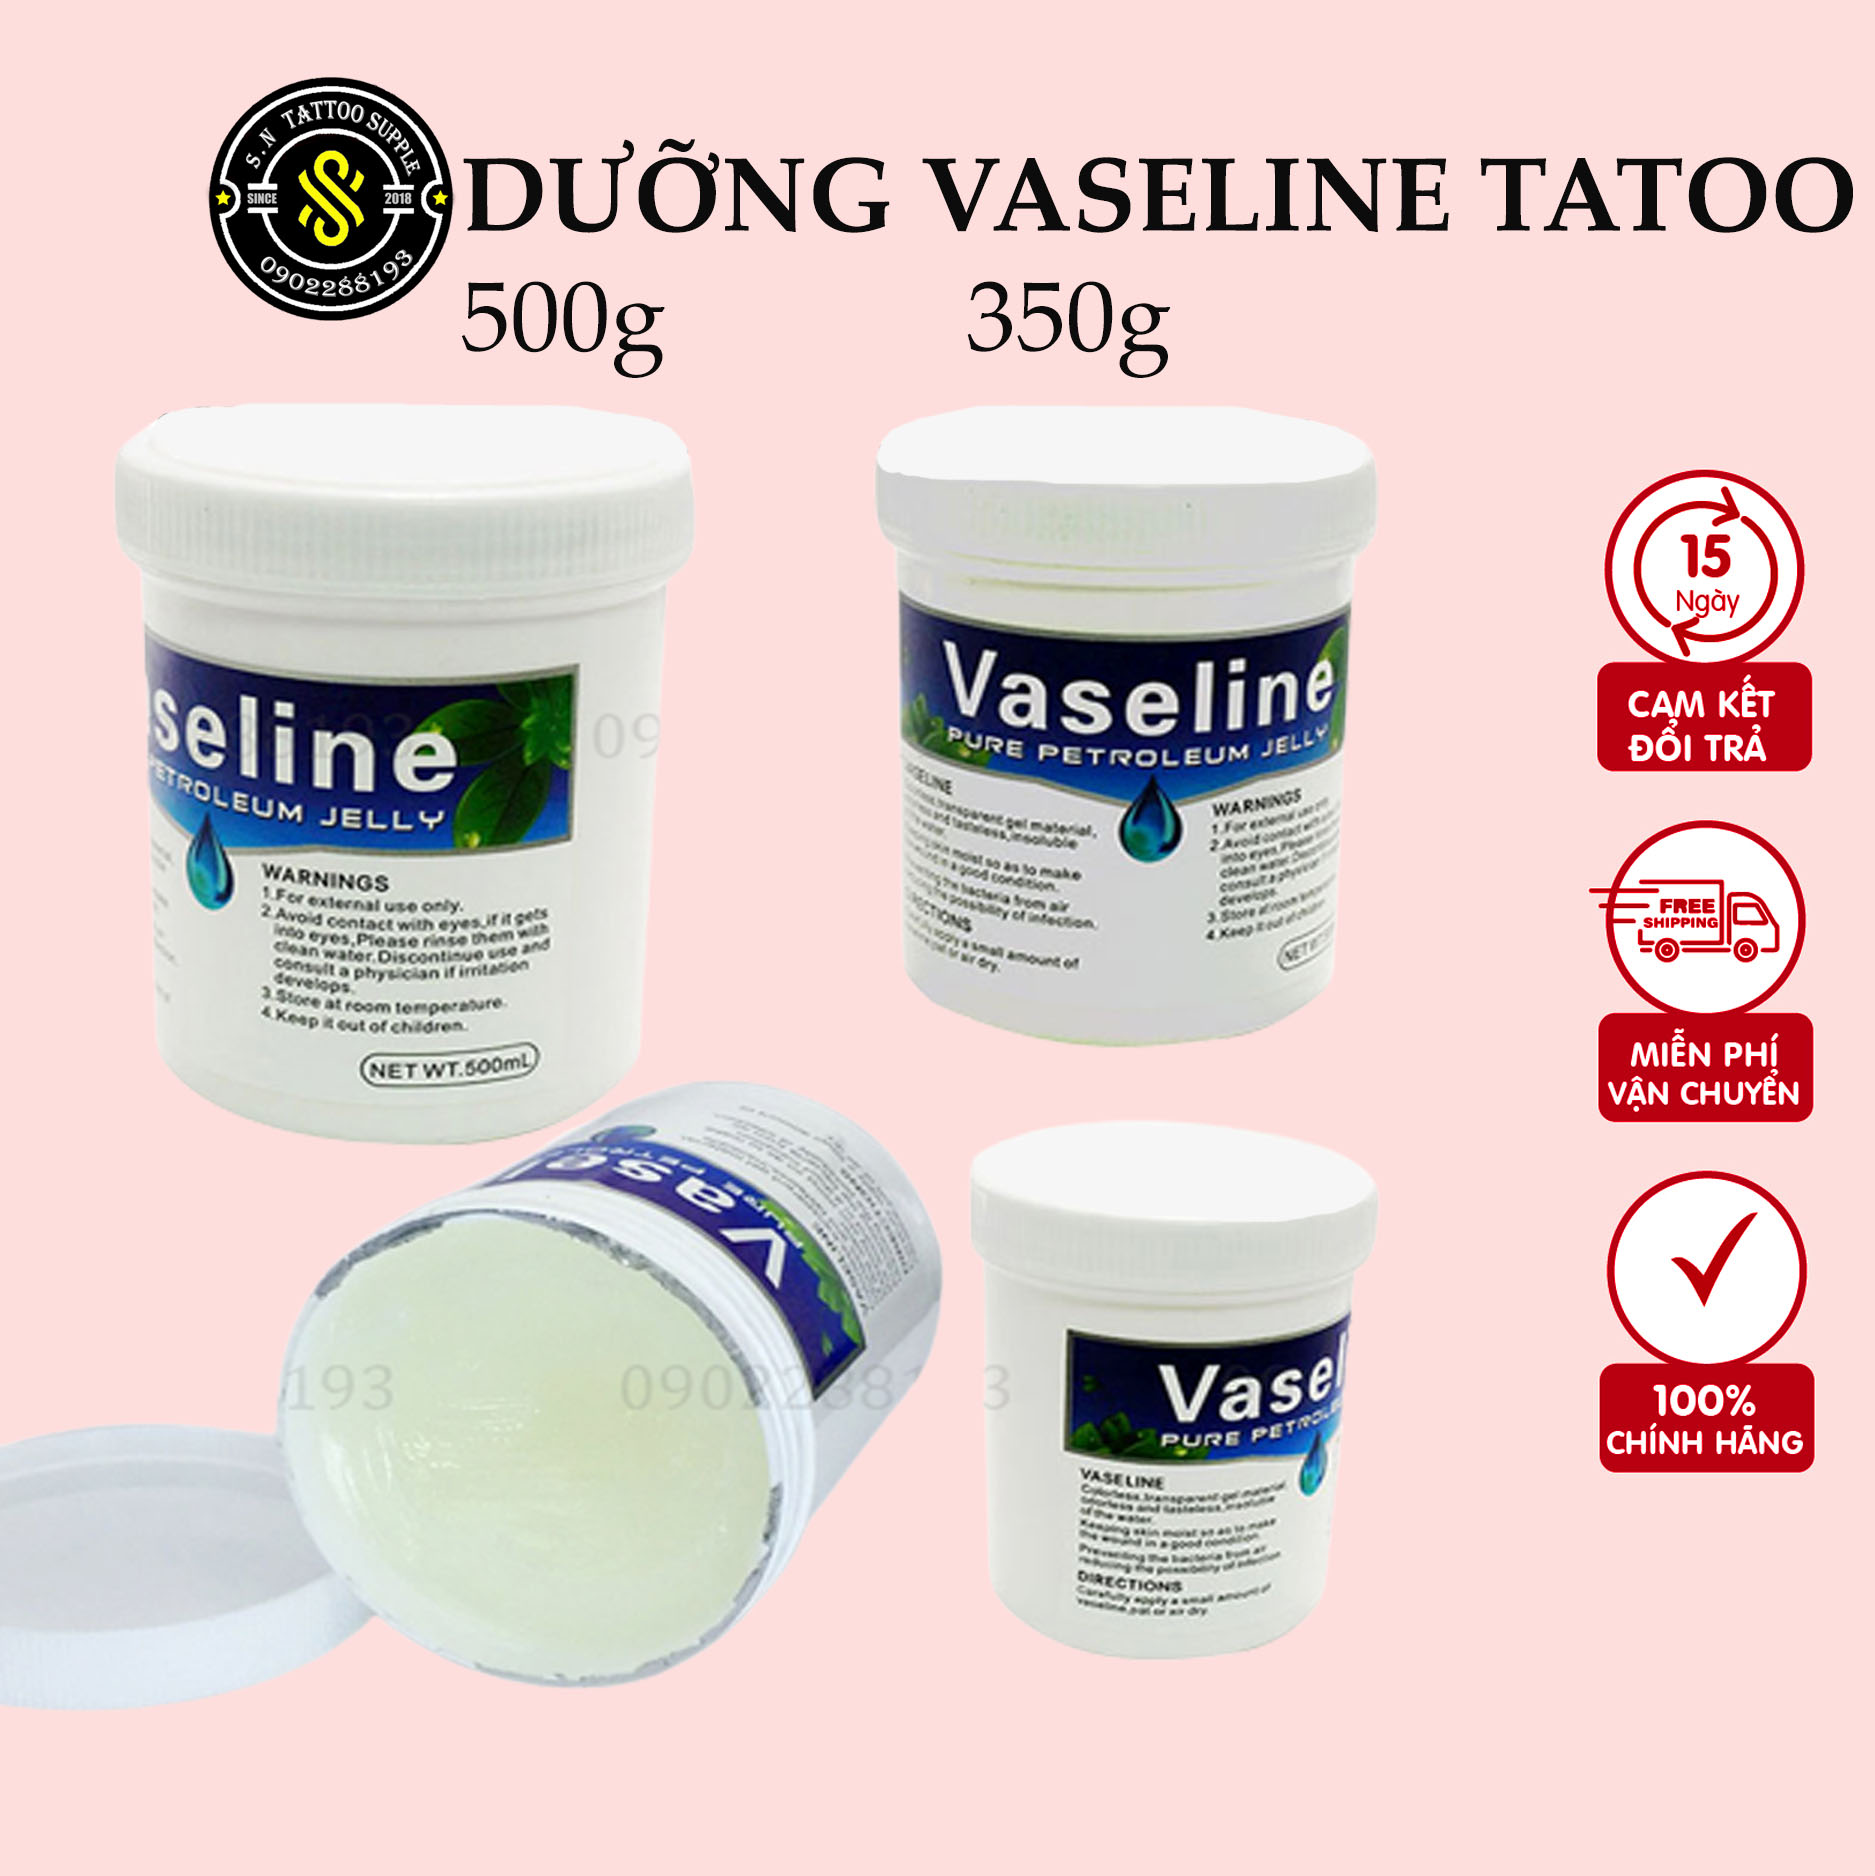 Vaseline Tattoo Thẩm Mỹ 500g 350g - Độ mịn vs chất lượng tốt